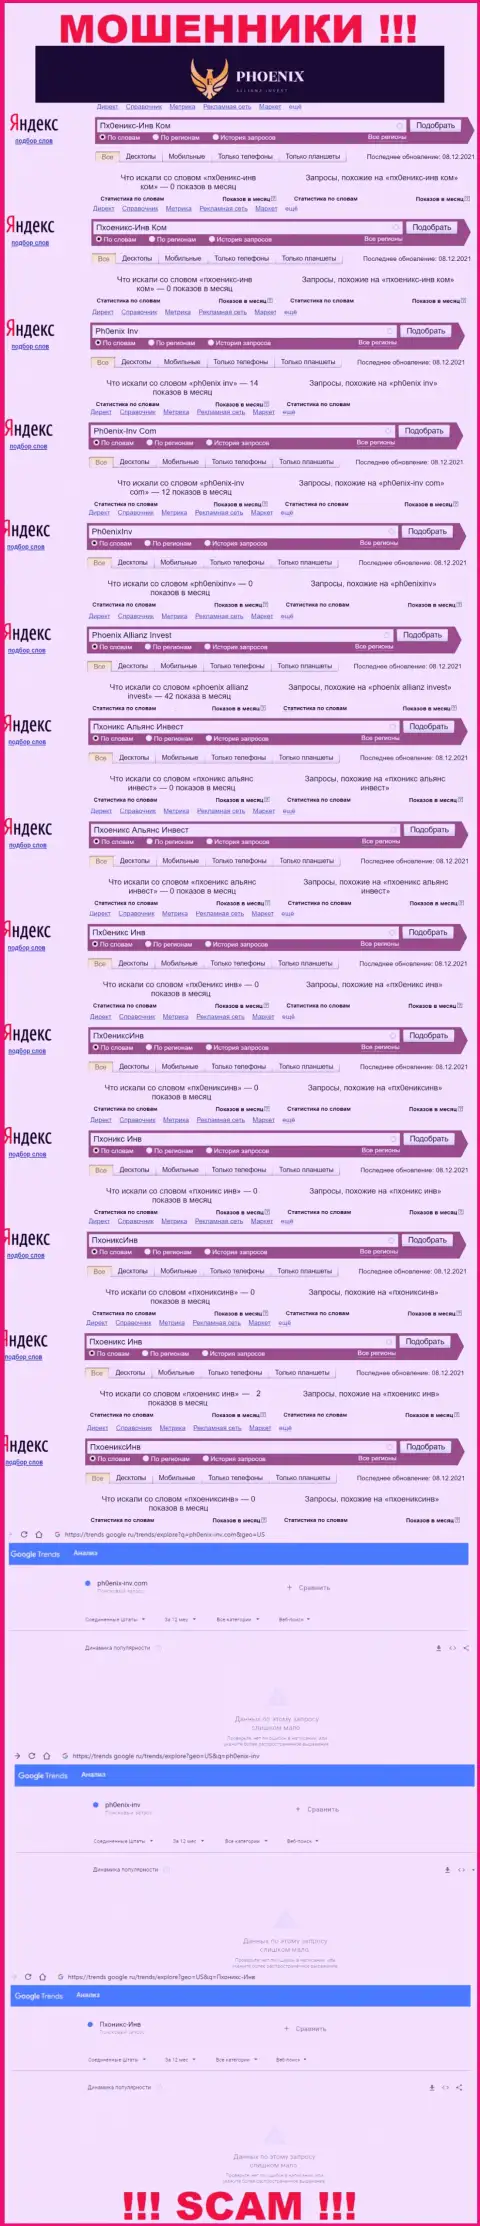 Скриншот статистических данных online запросов по противоправно действующей компании Пхоникс-Инв Ком